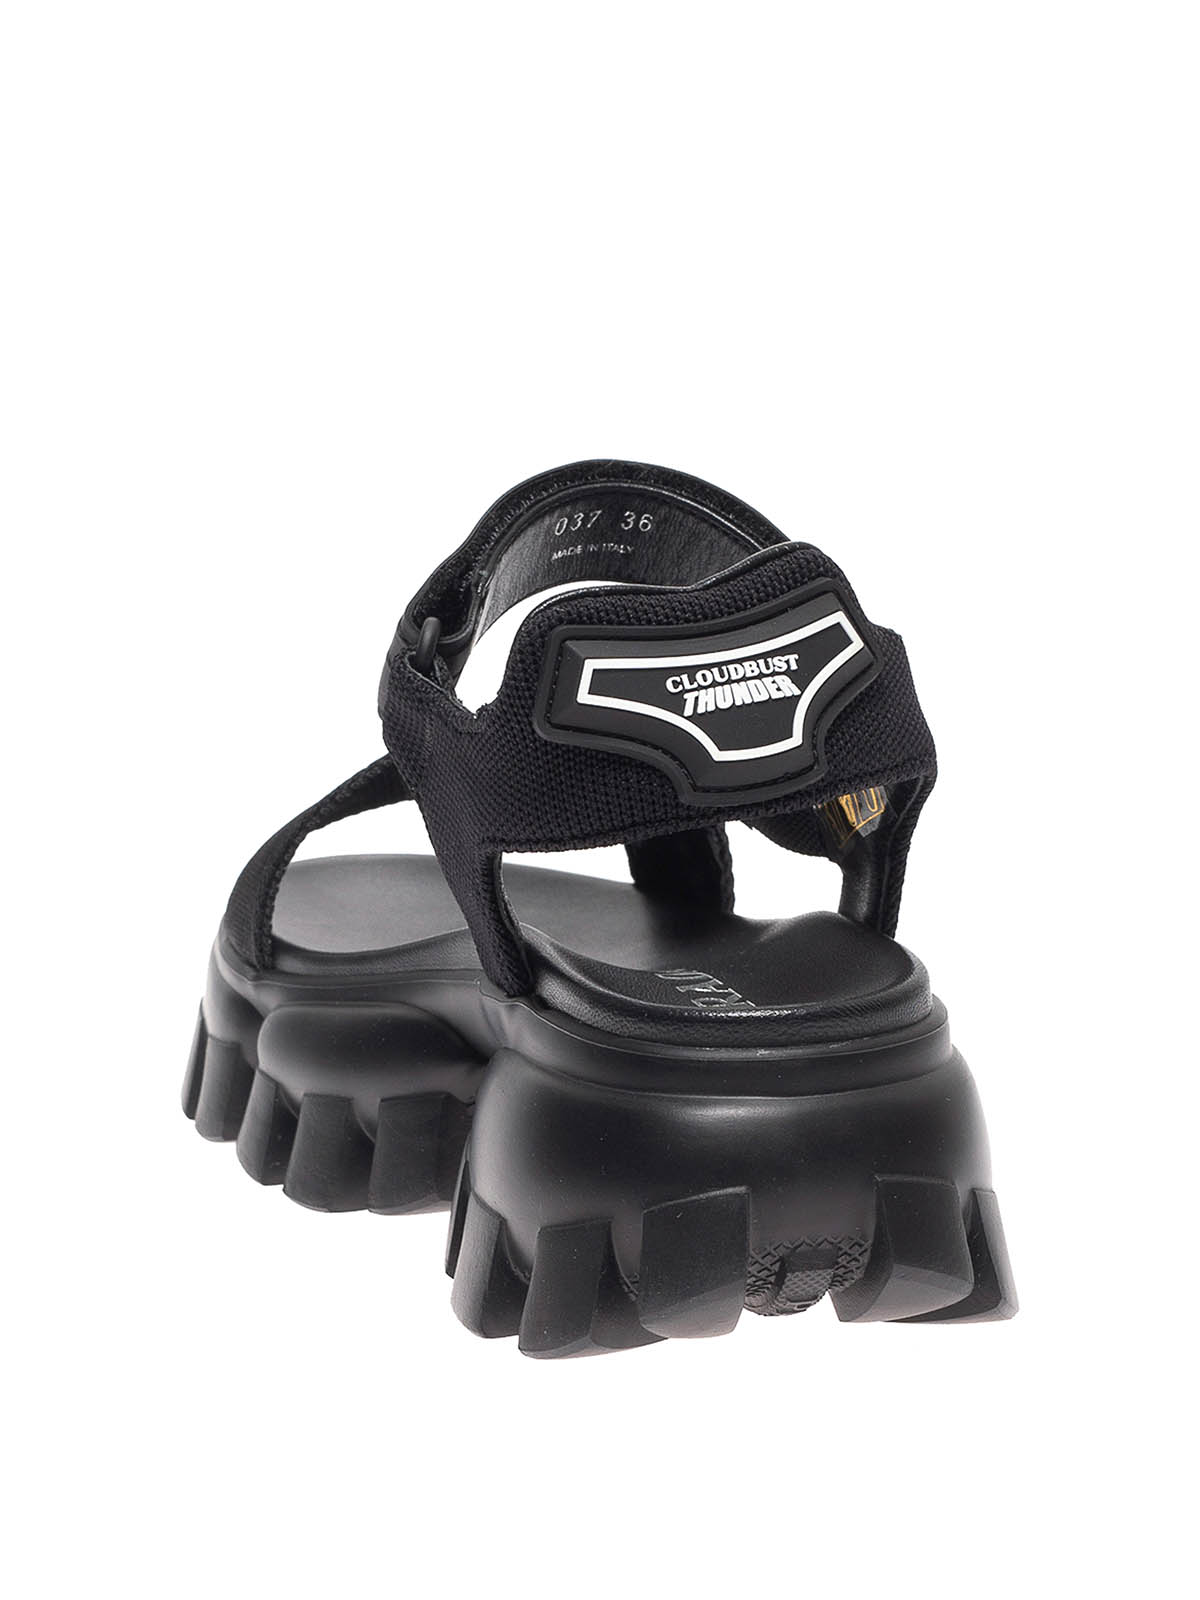 Sandals Prada - Cloudbust Thunder sandals - 1X037M3L6WF0002 | iKRIX.com